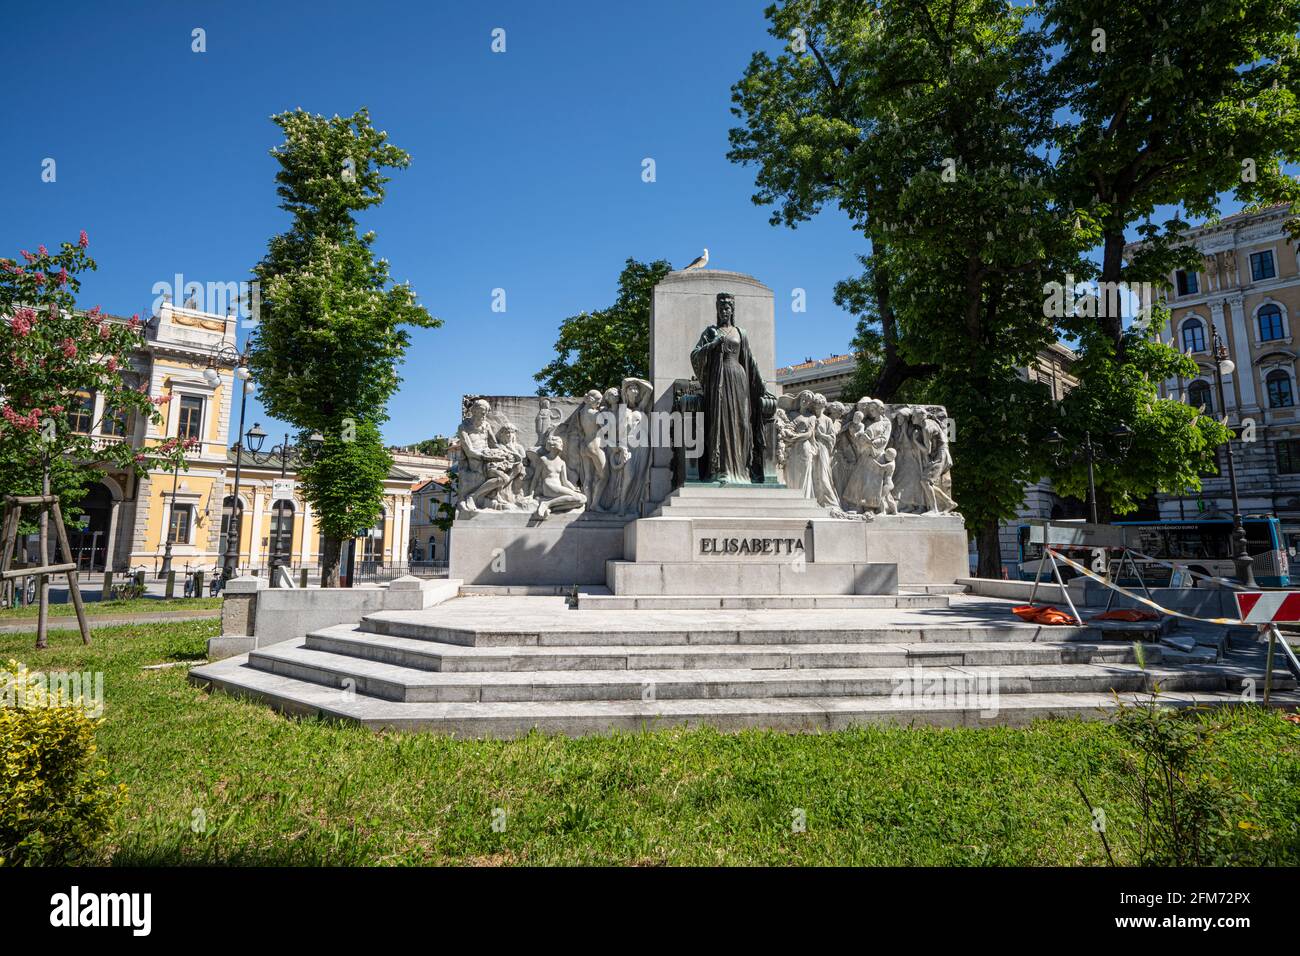 Trieste, Italia. 3 de mayo de 2021. La Estatua de la Emperatriz Elisabeth de Austria en el Jardín de la Plaza de la Libertad Foto de stock